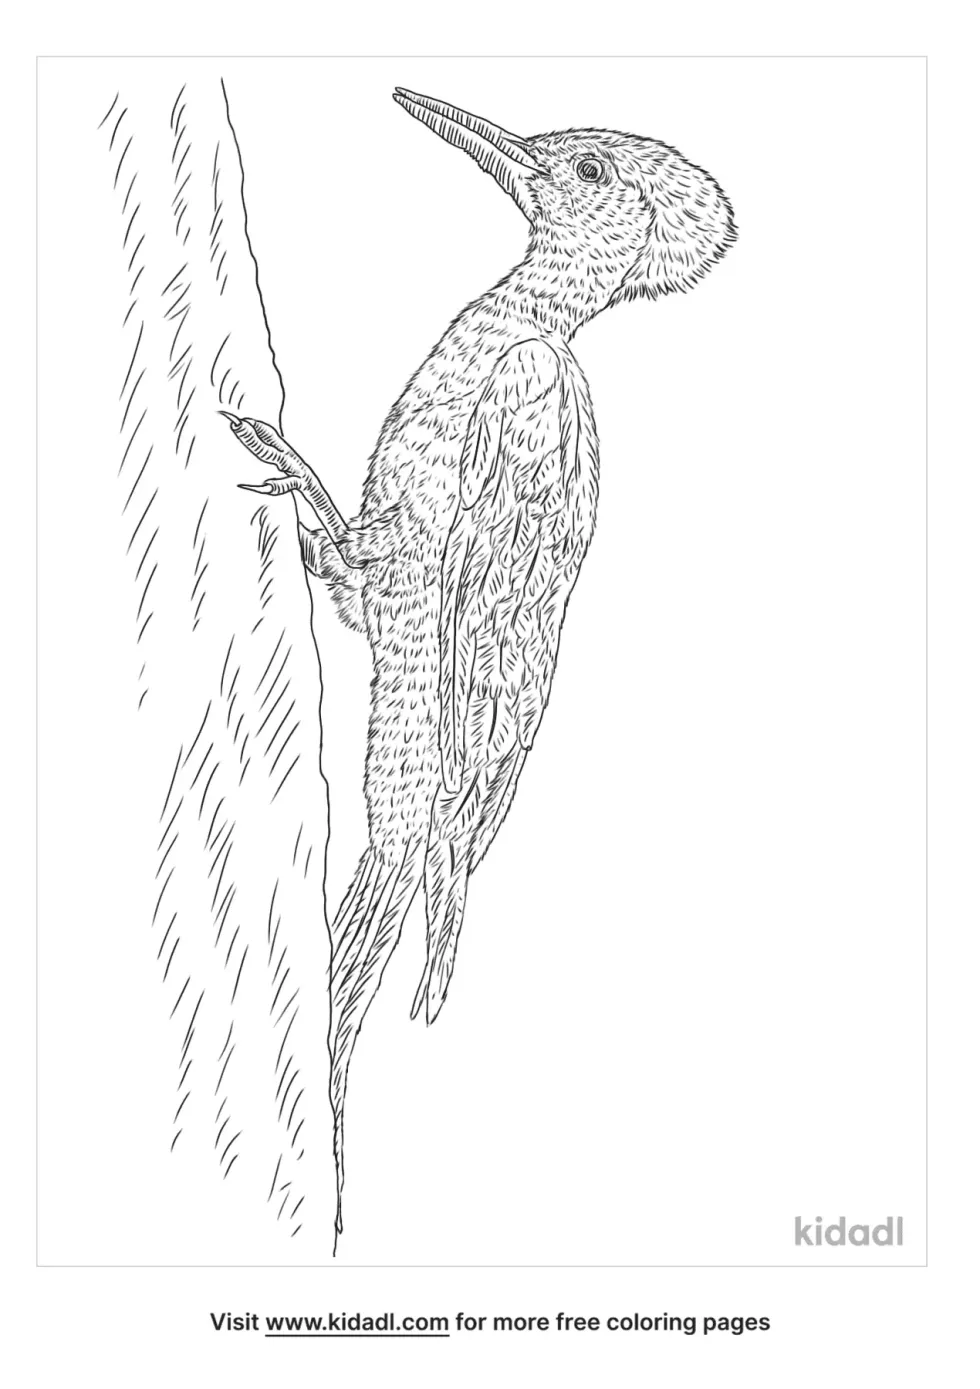 White Bellied Woodpecker